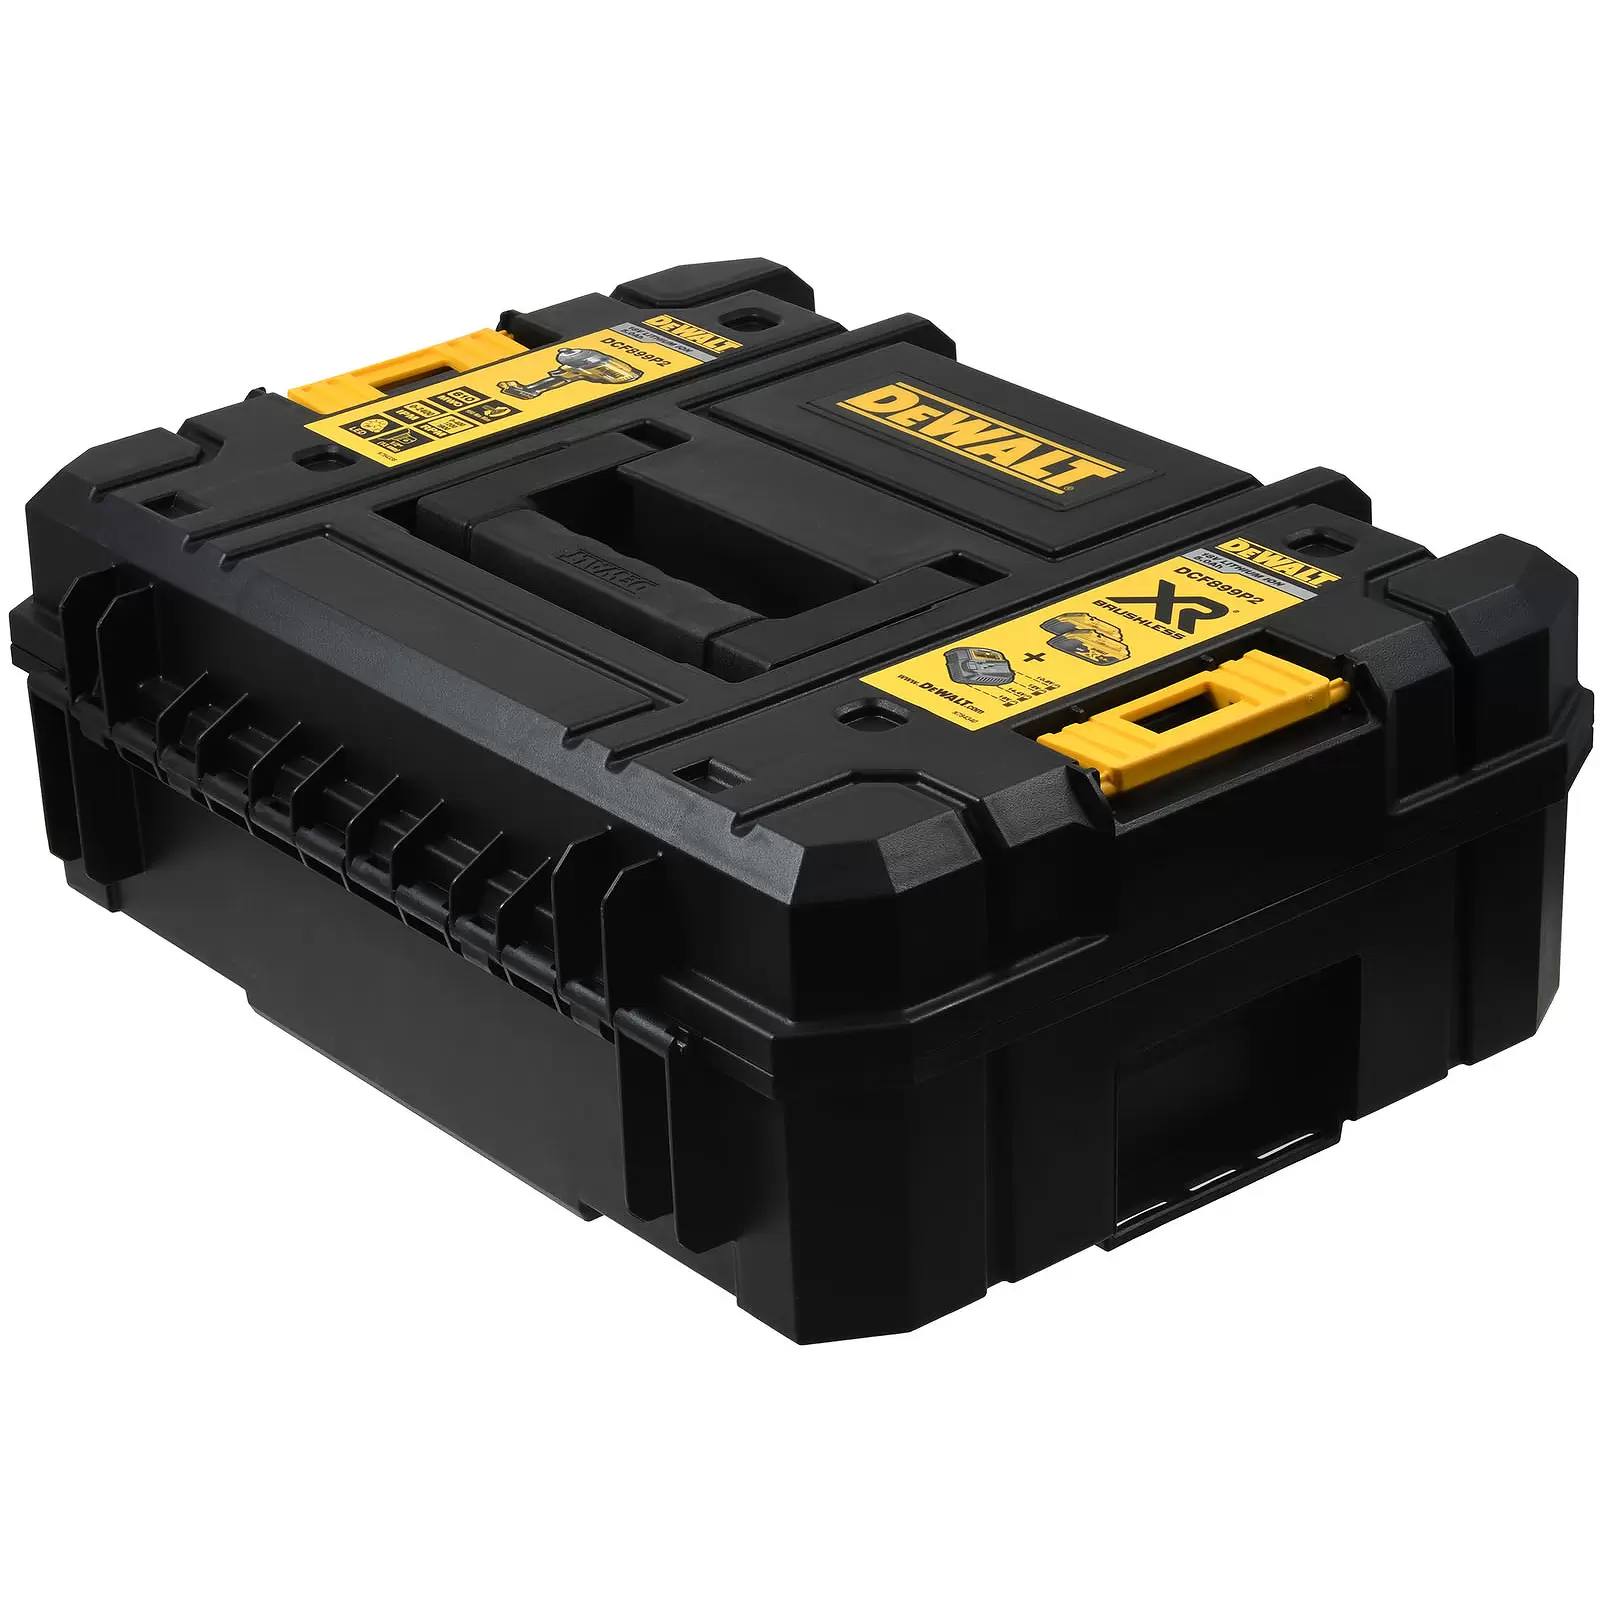 DEWALT DWST83345-1 Werkzeugbox, Koffer, TSTAK-Box